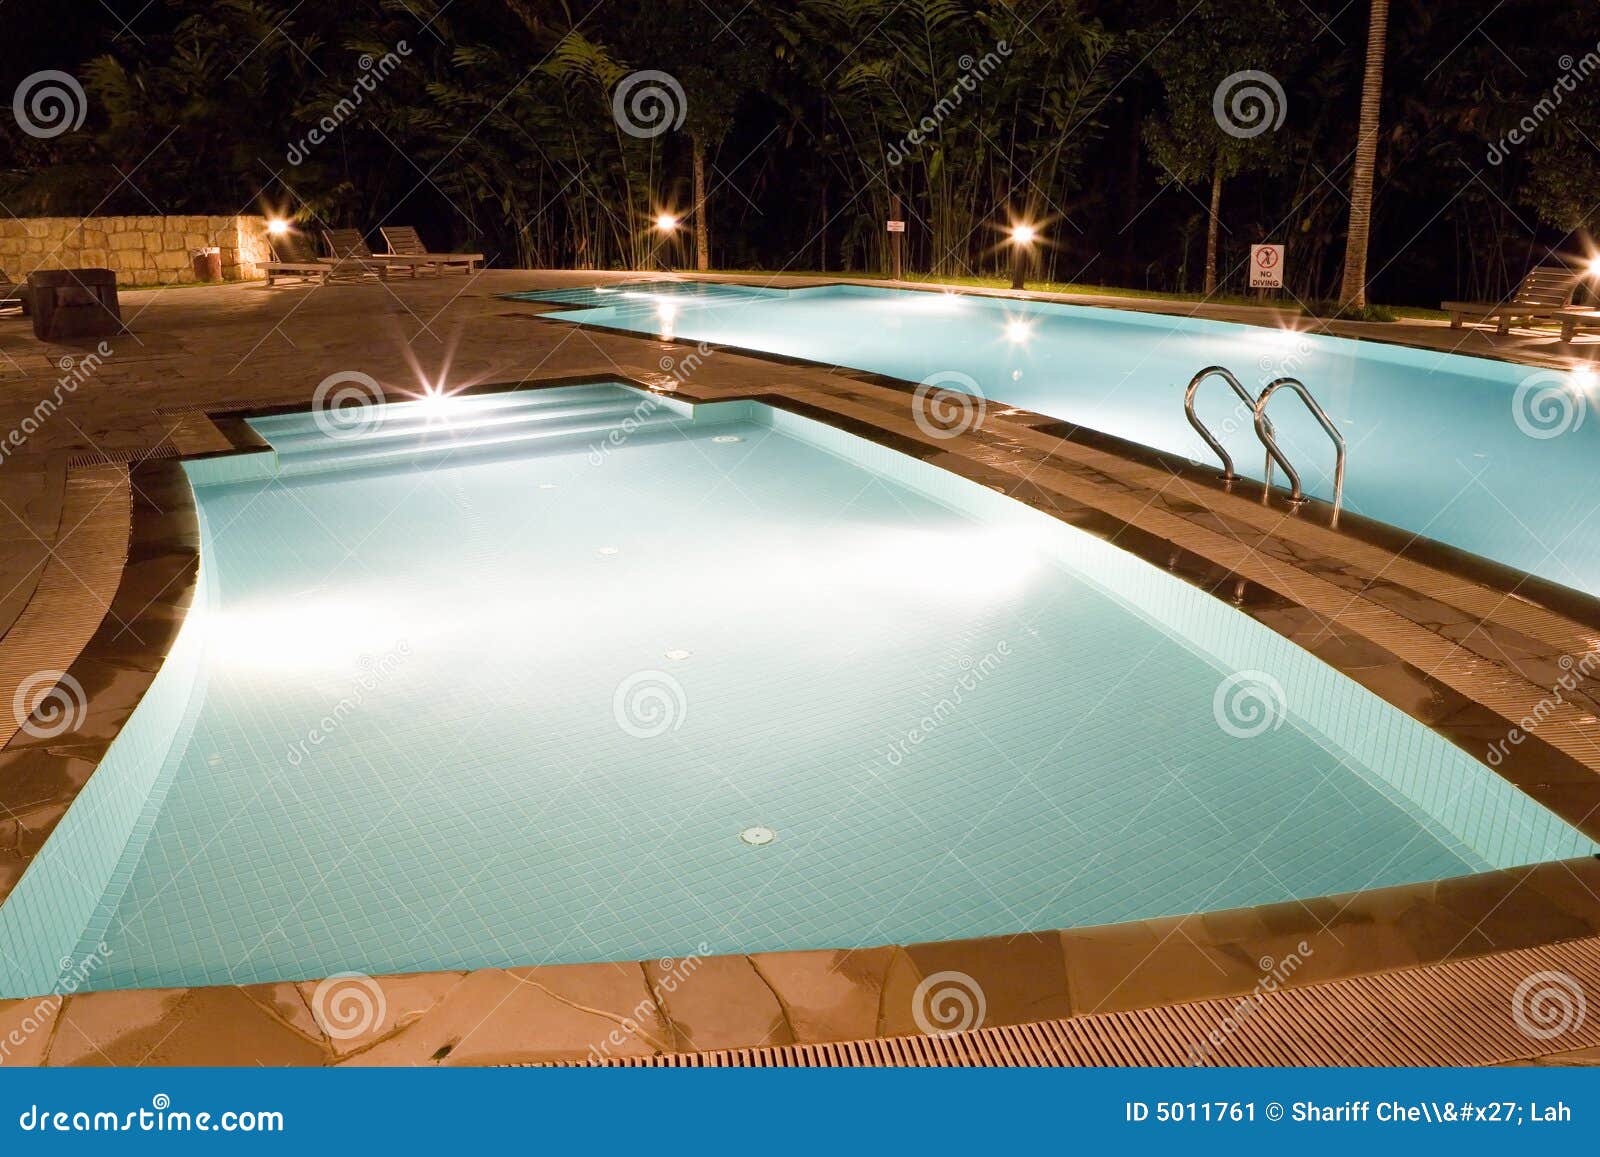 swimming pools at night